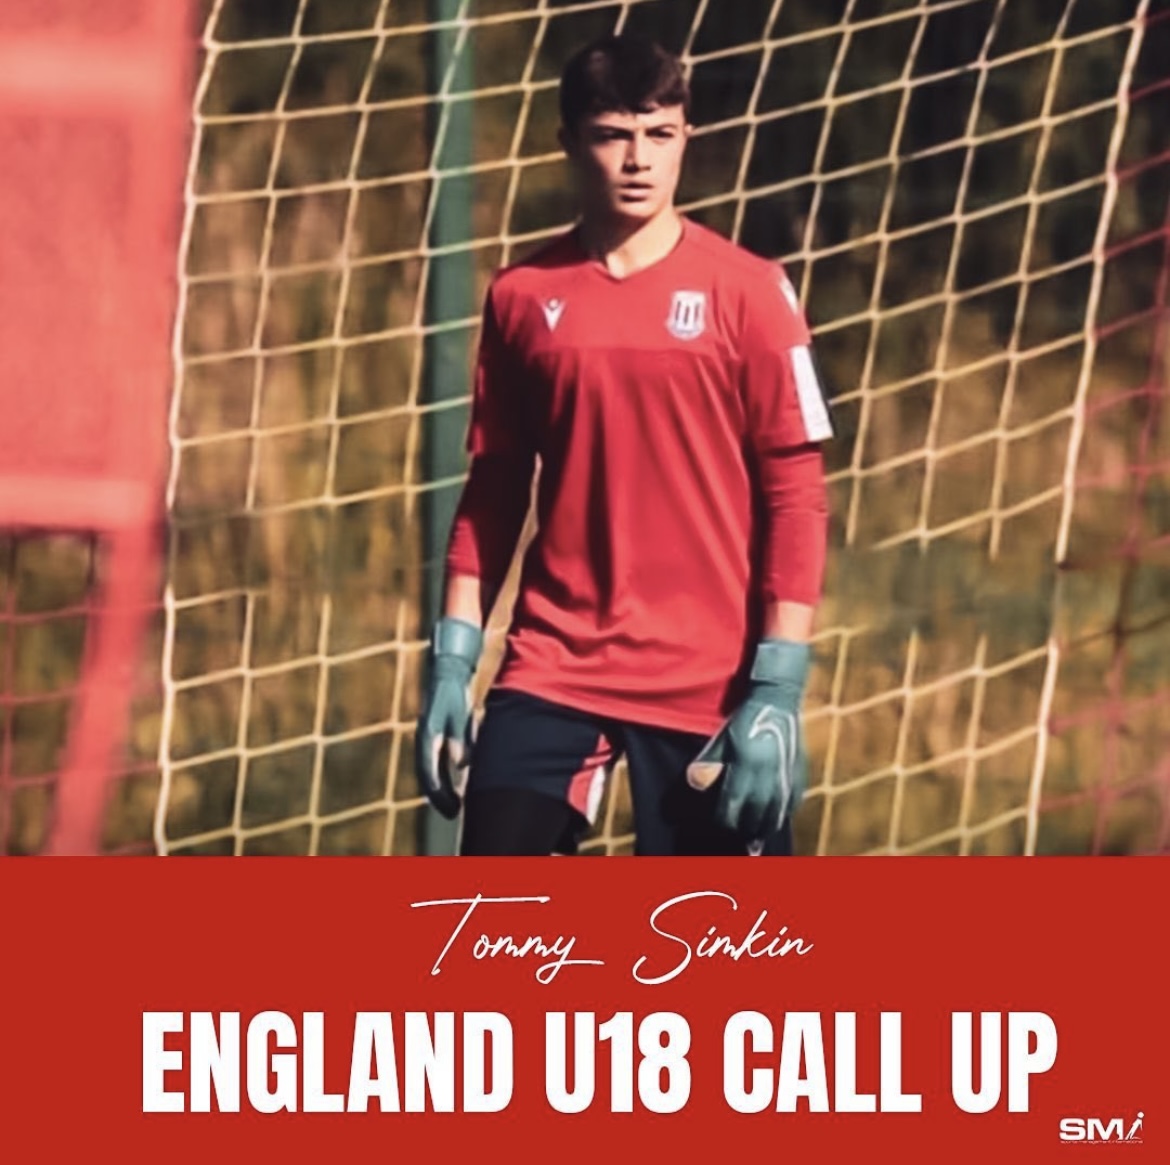 Tommy Simkin England u18 call up